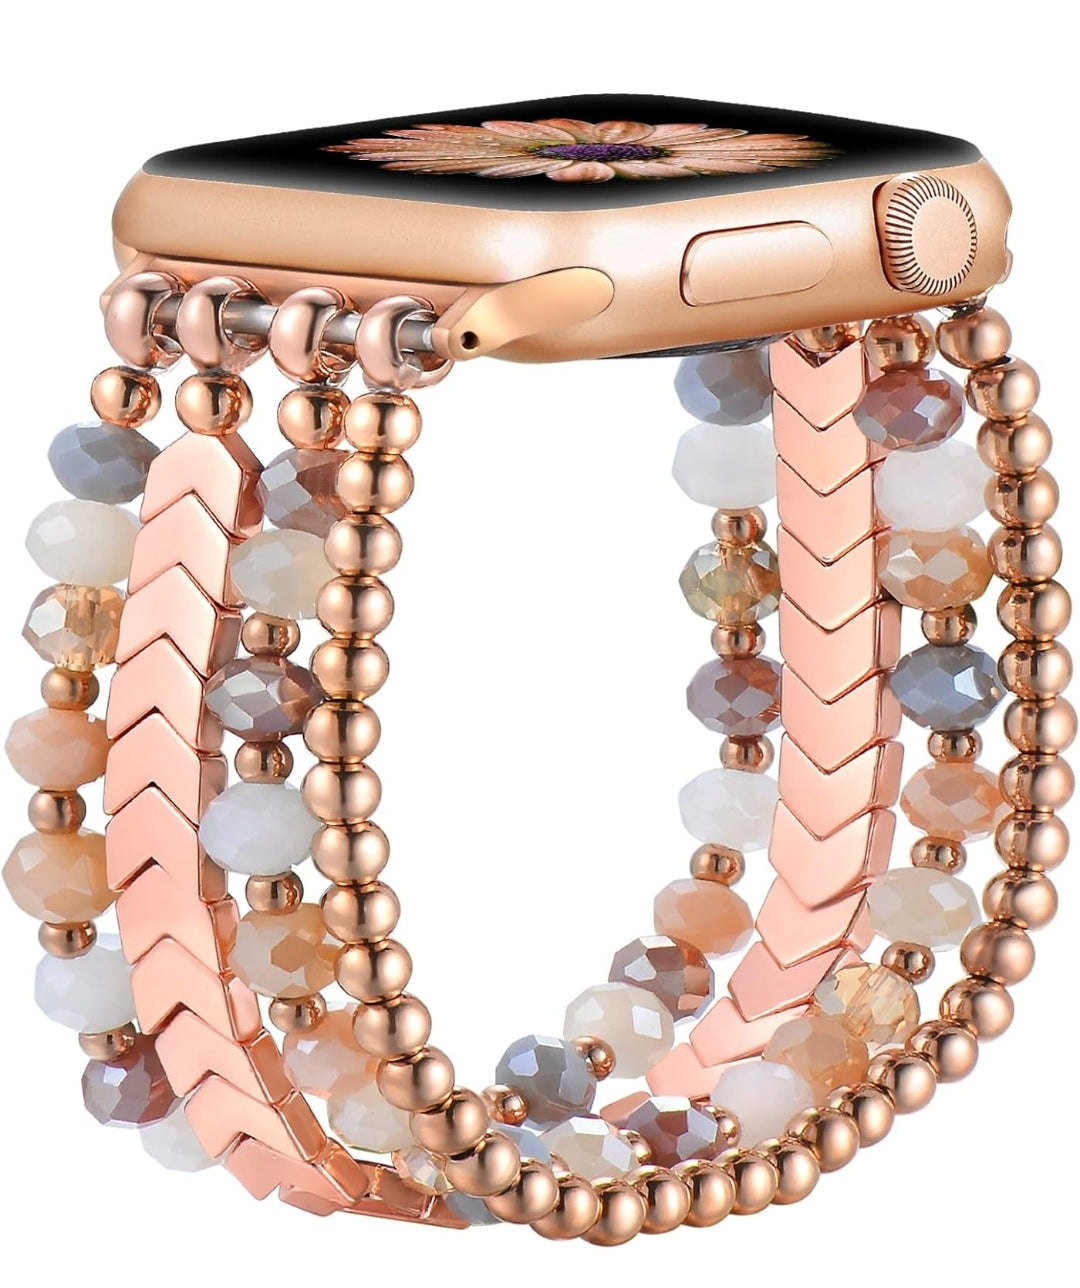 Apple Watch Beaded Bracelet Bands